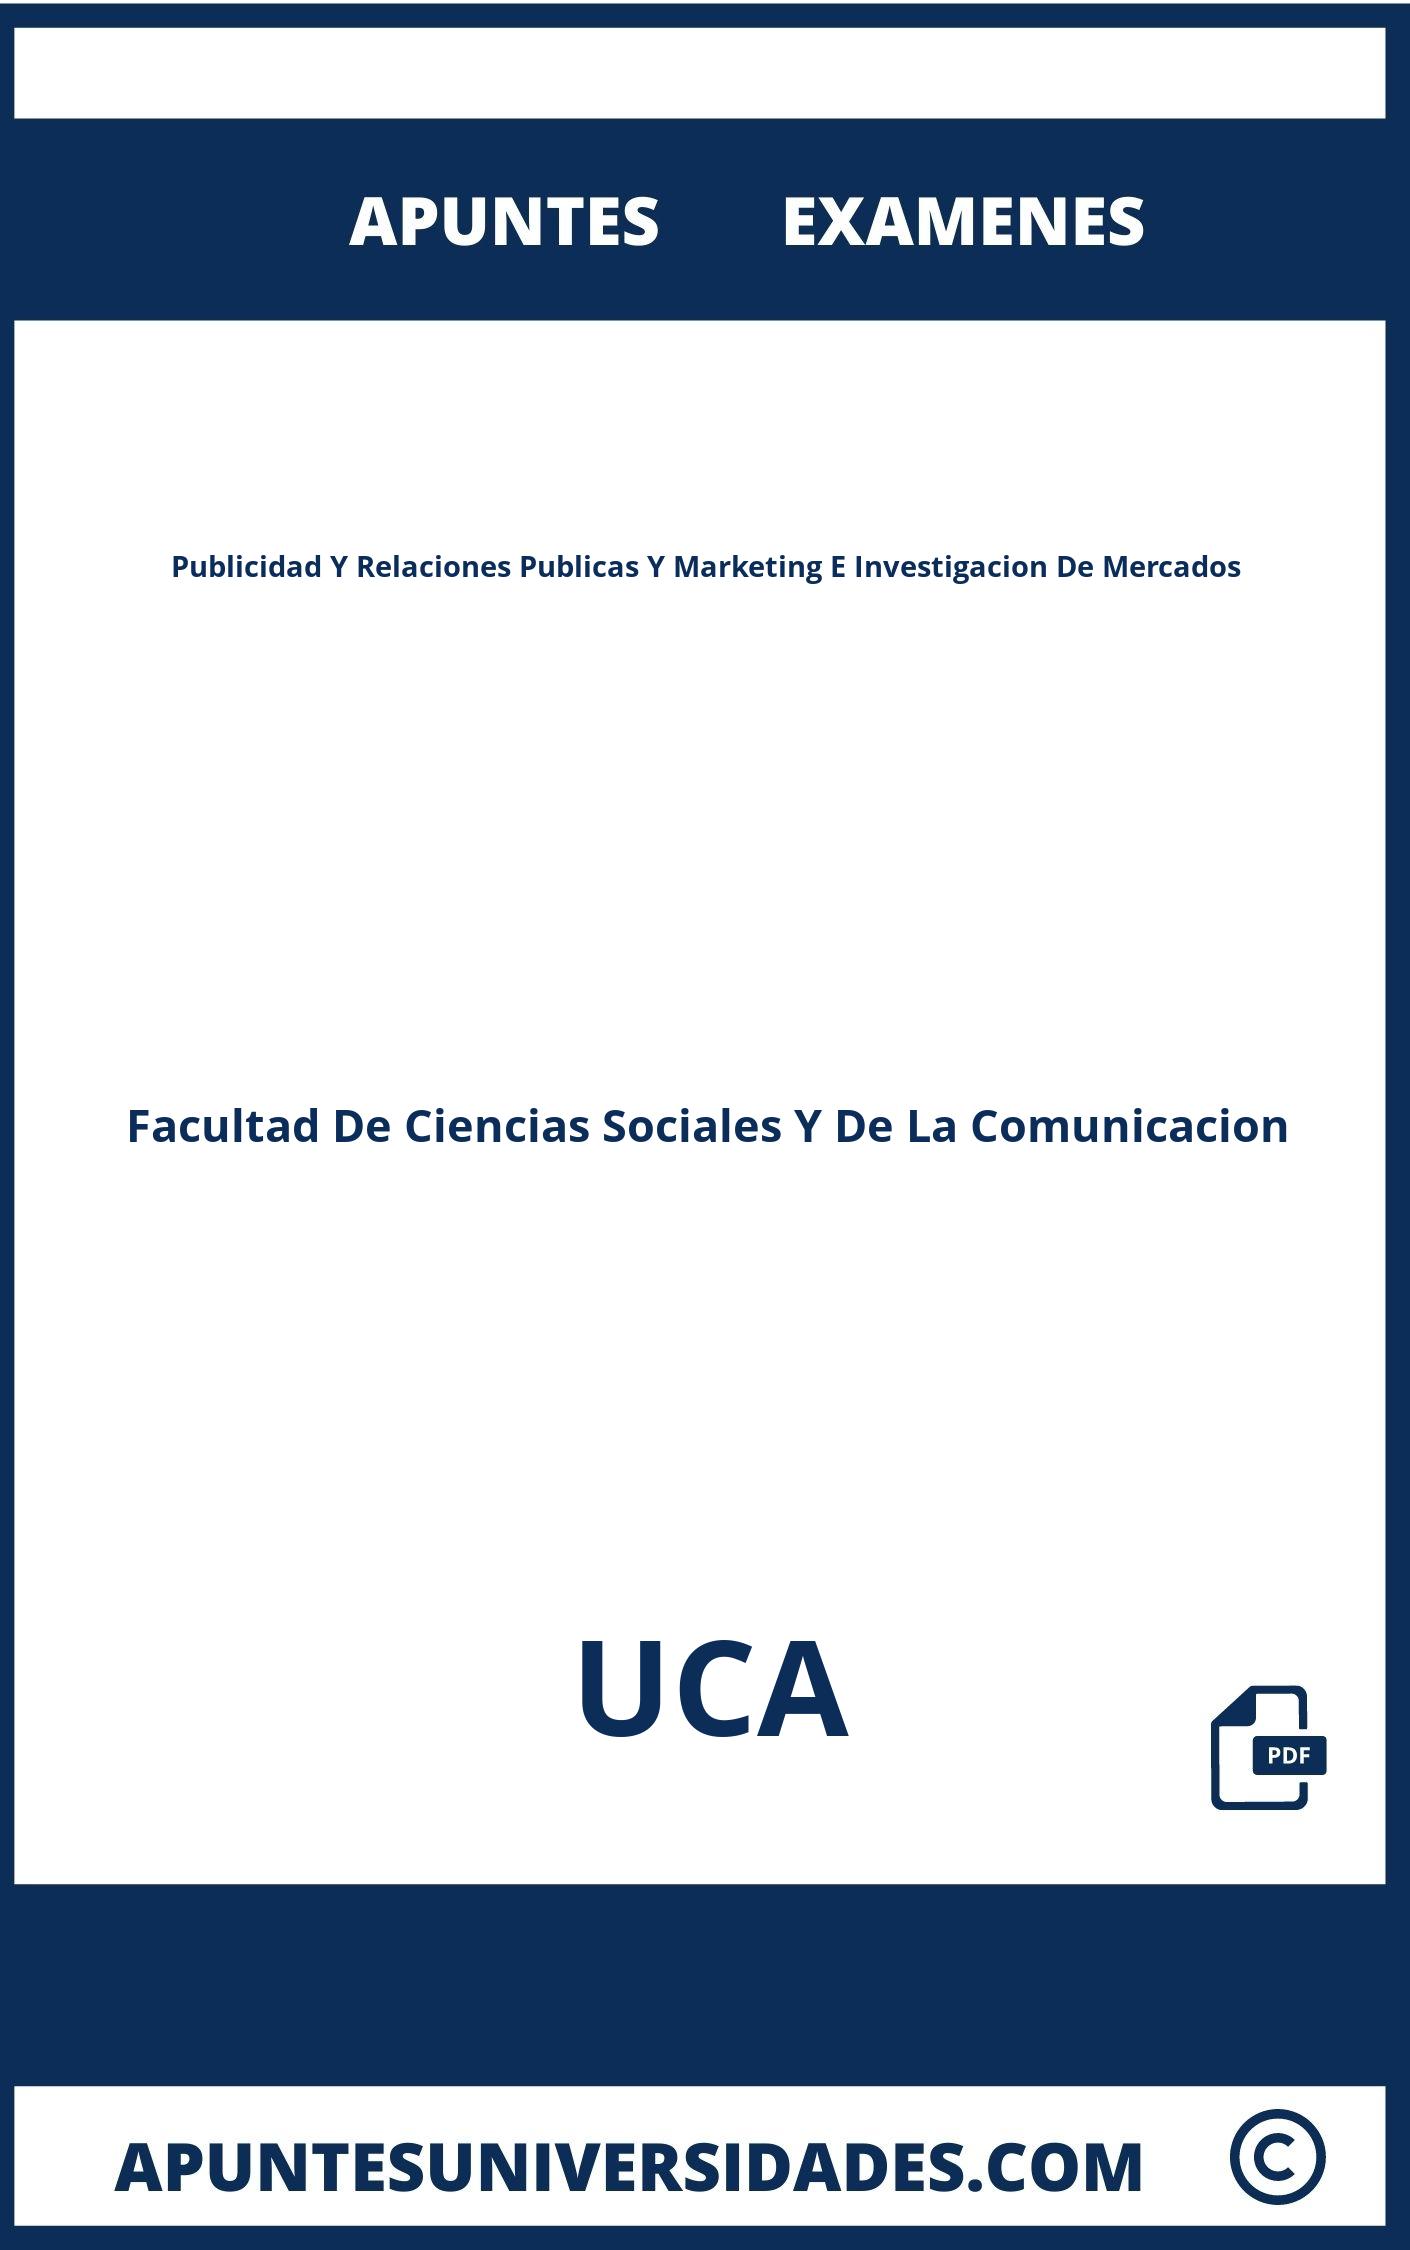 Apuntes y Examenes Publicidad Y Relaciones Publicas Y Marketing E Investigacion De Mercados UCA